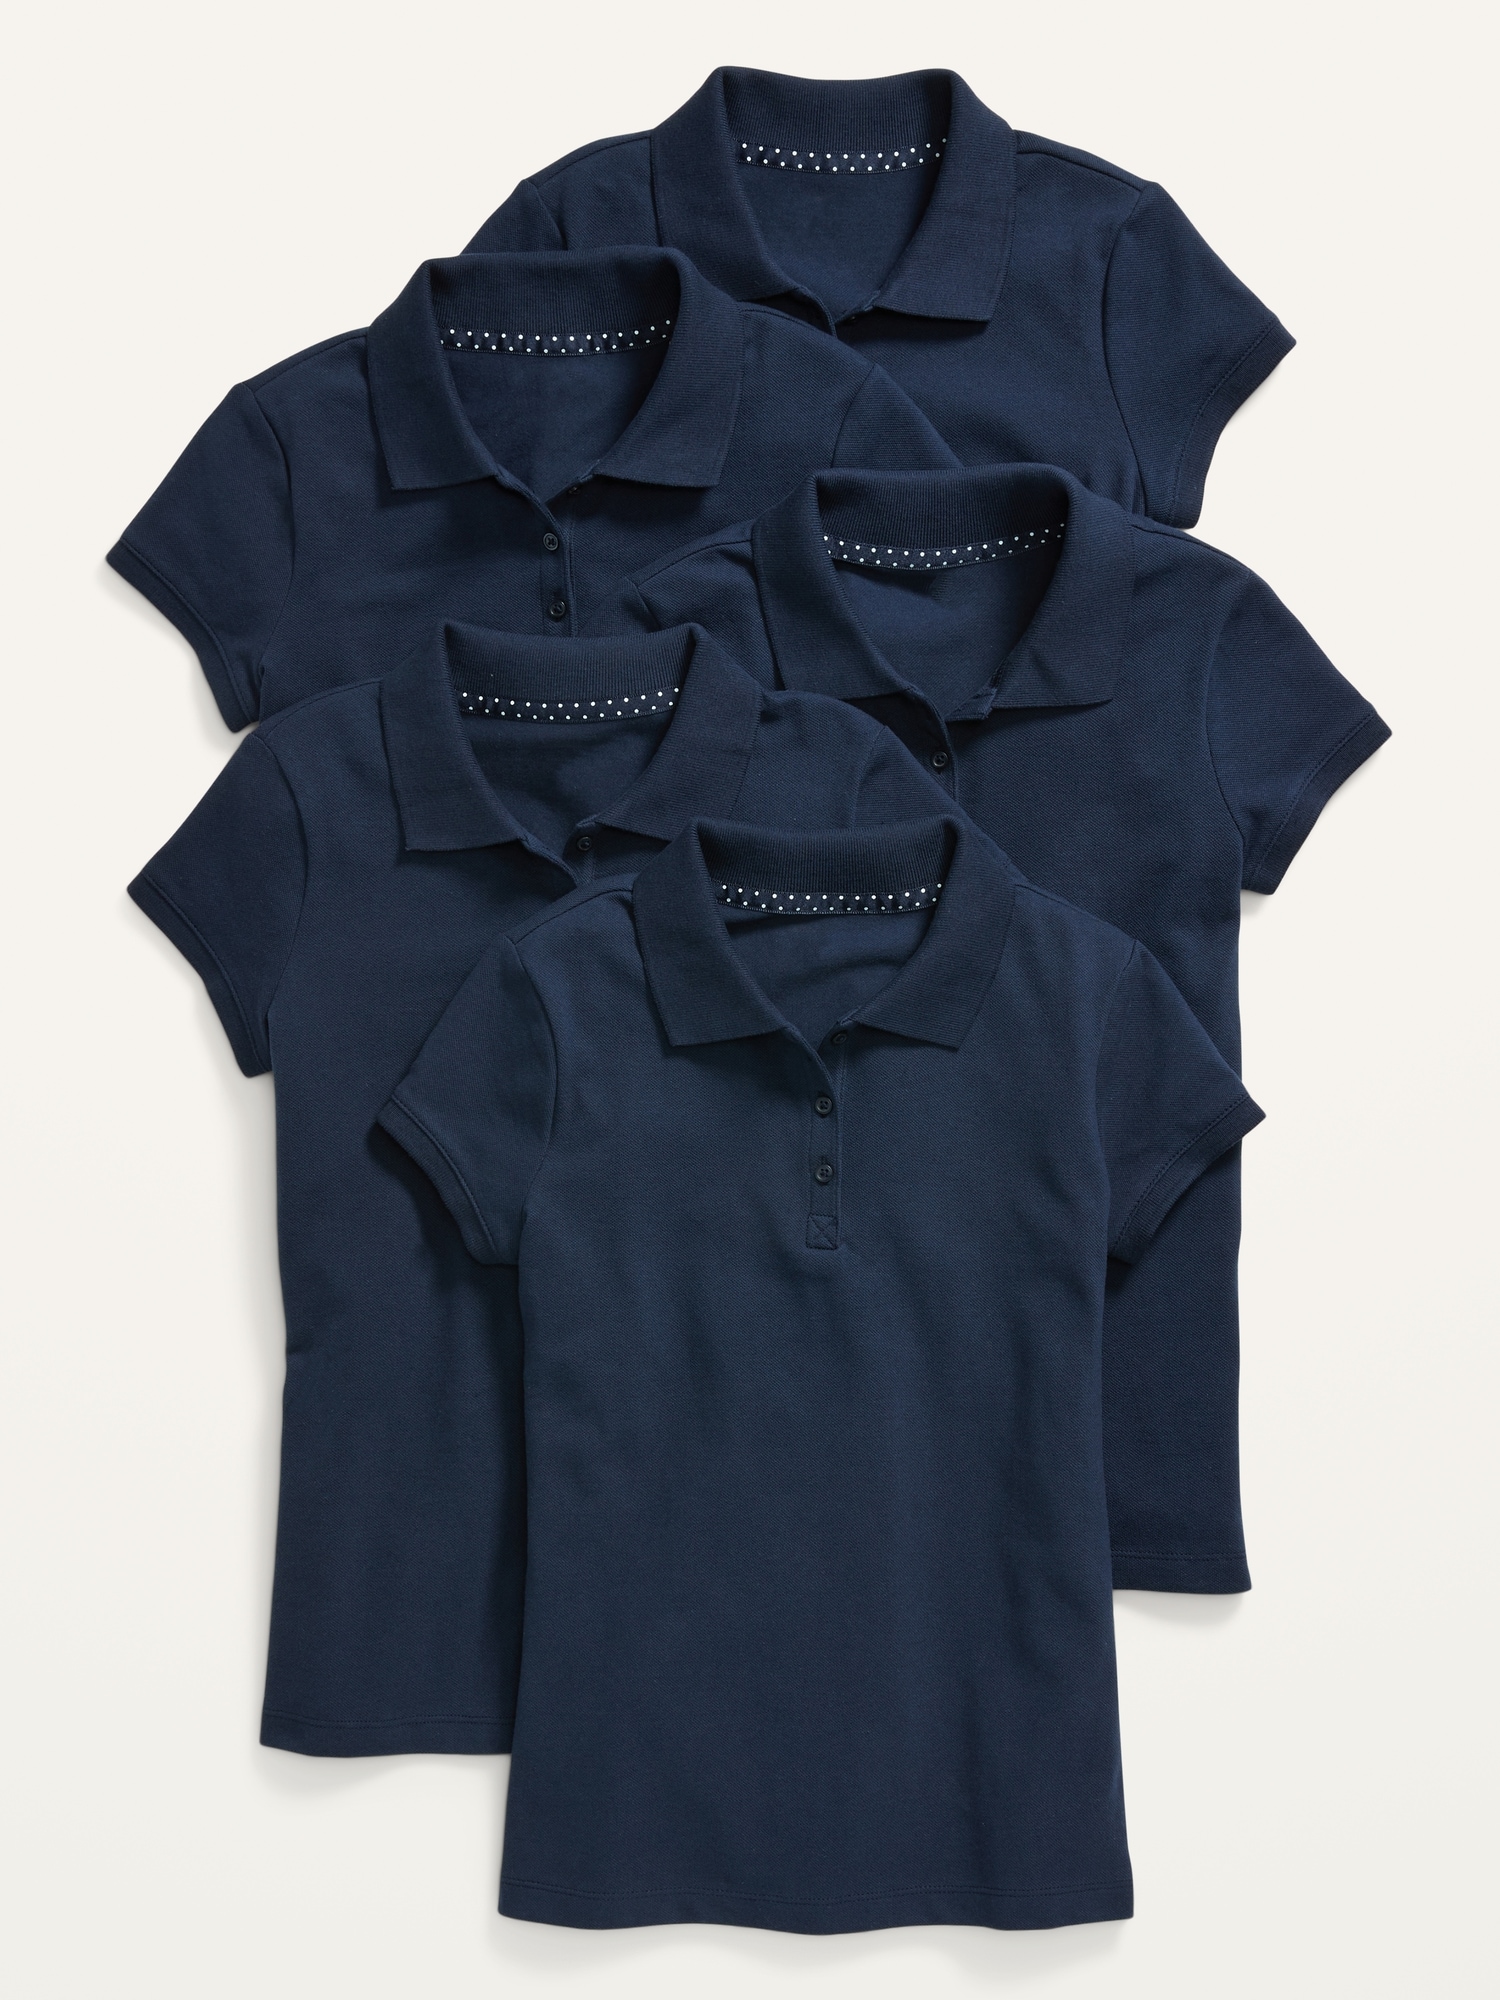 Oldnavy Uniform Short-Sleeve Polo Shirt 5-Pack for Girls